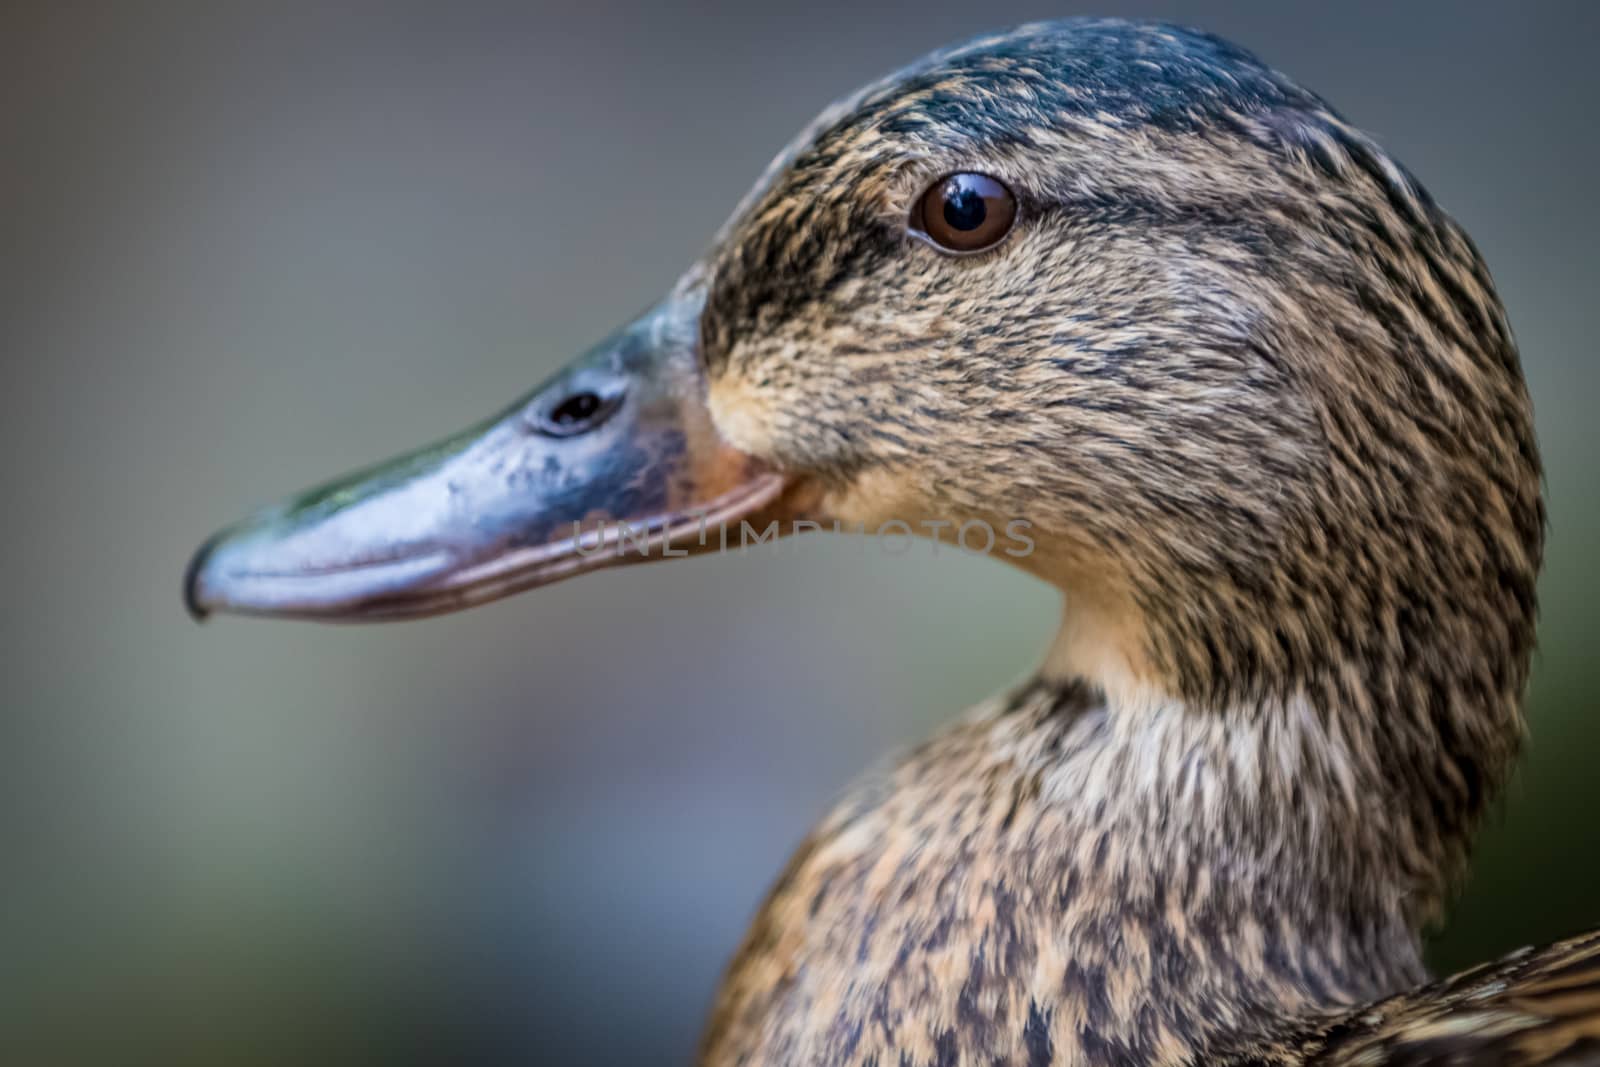 Brown duck portrait close up by sengnsp